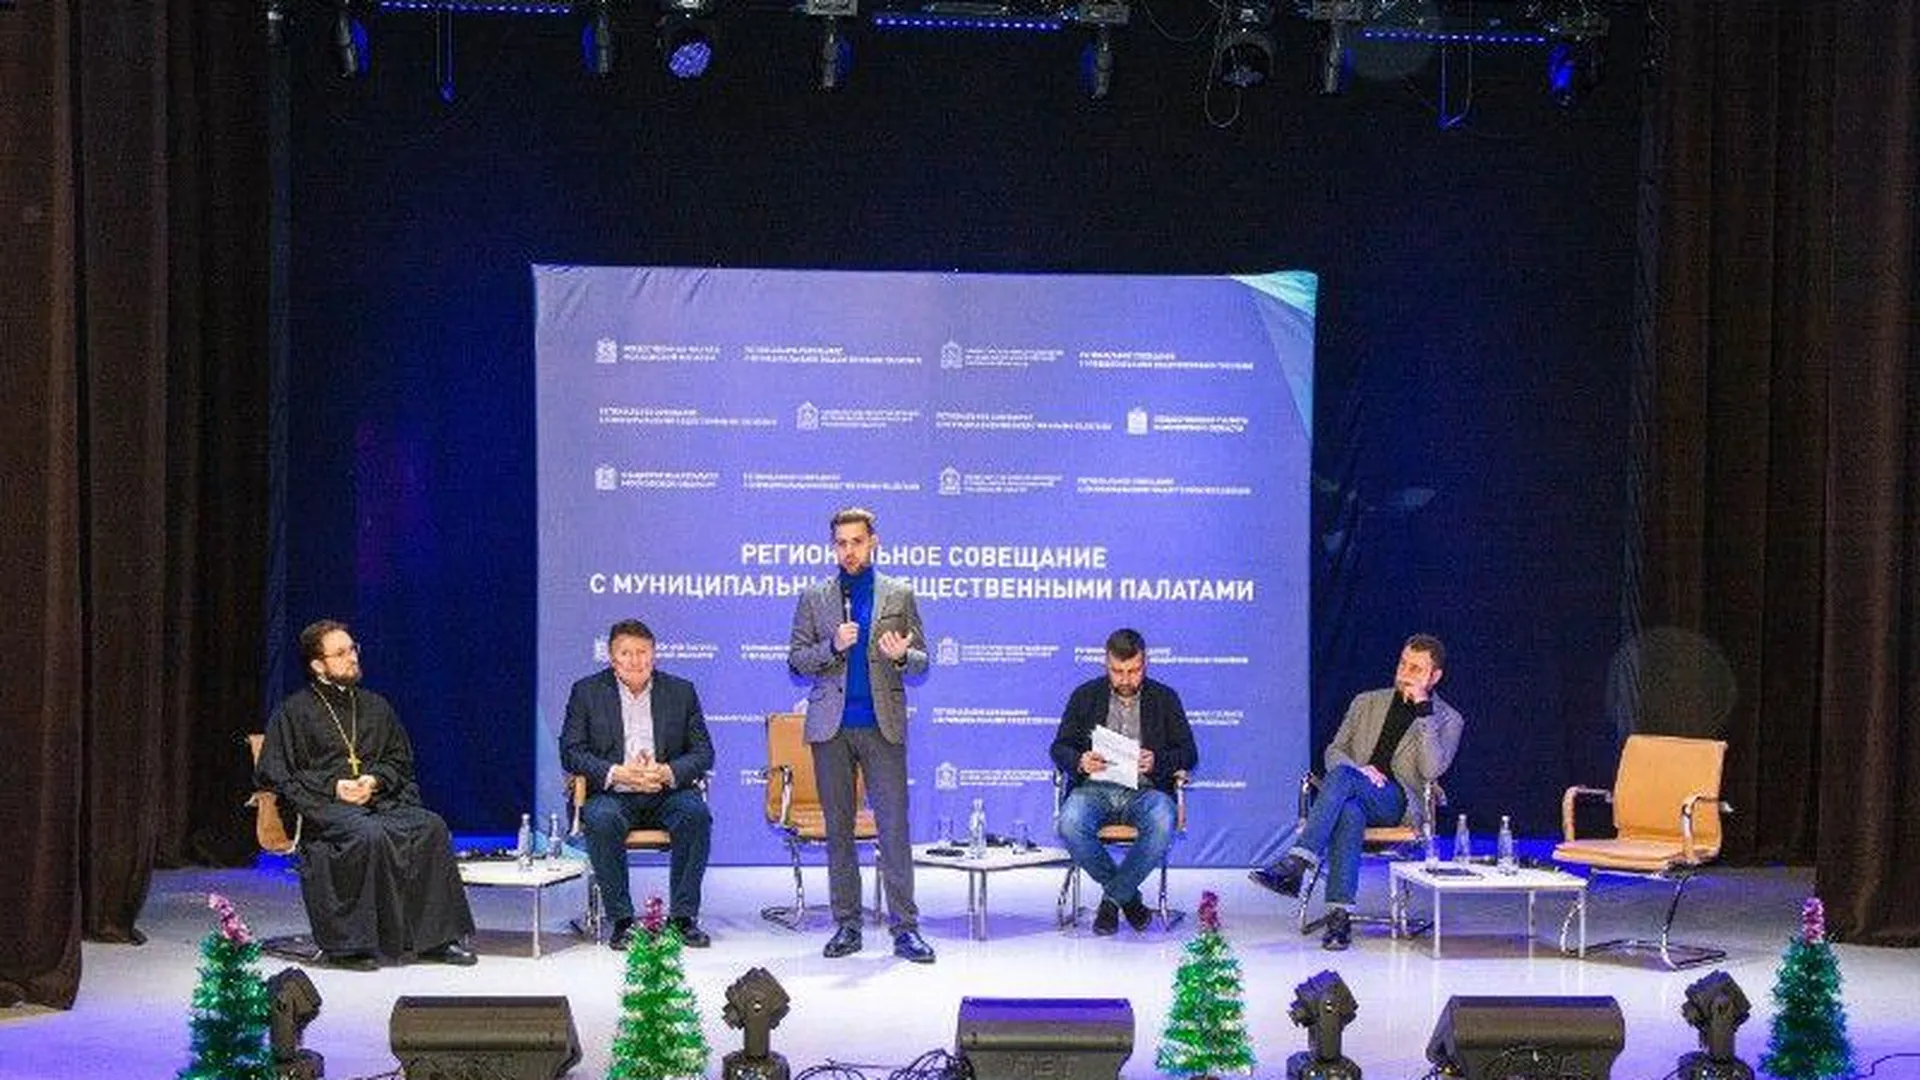 Региональное совещание с муниципальными Общественными палатами состоялось в Одинцово